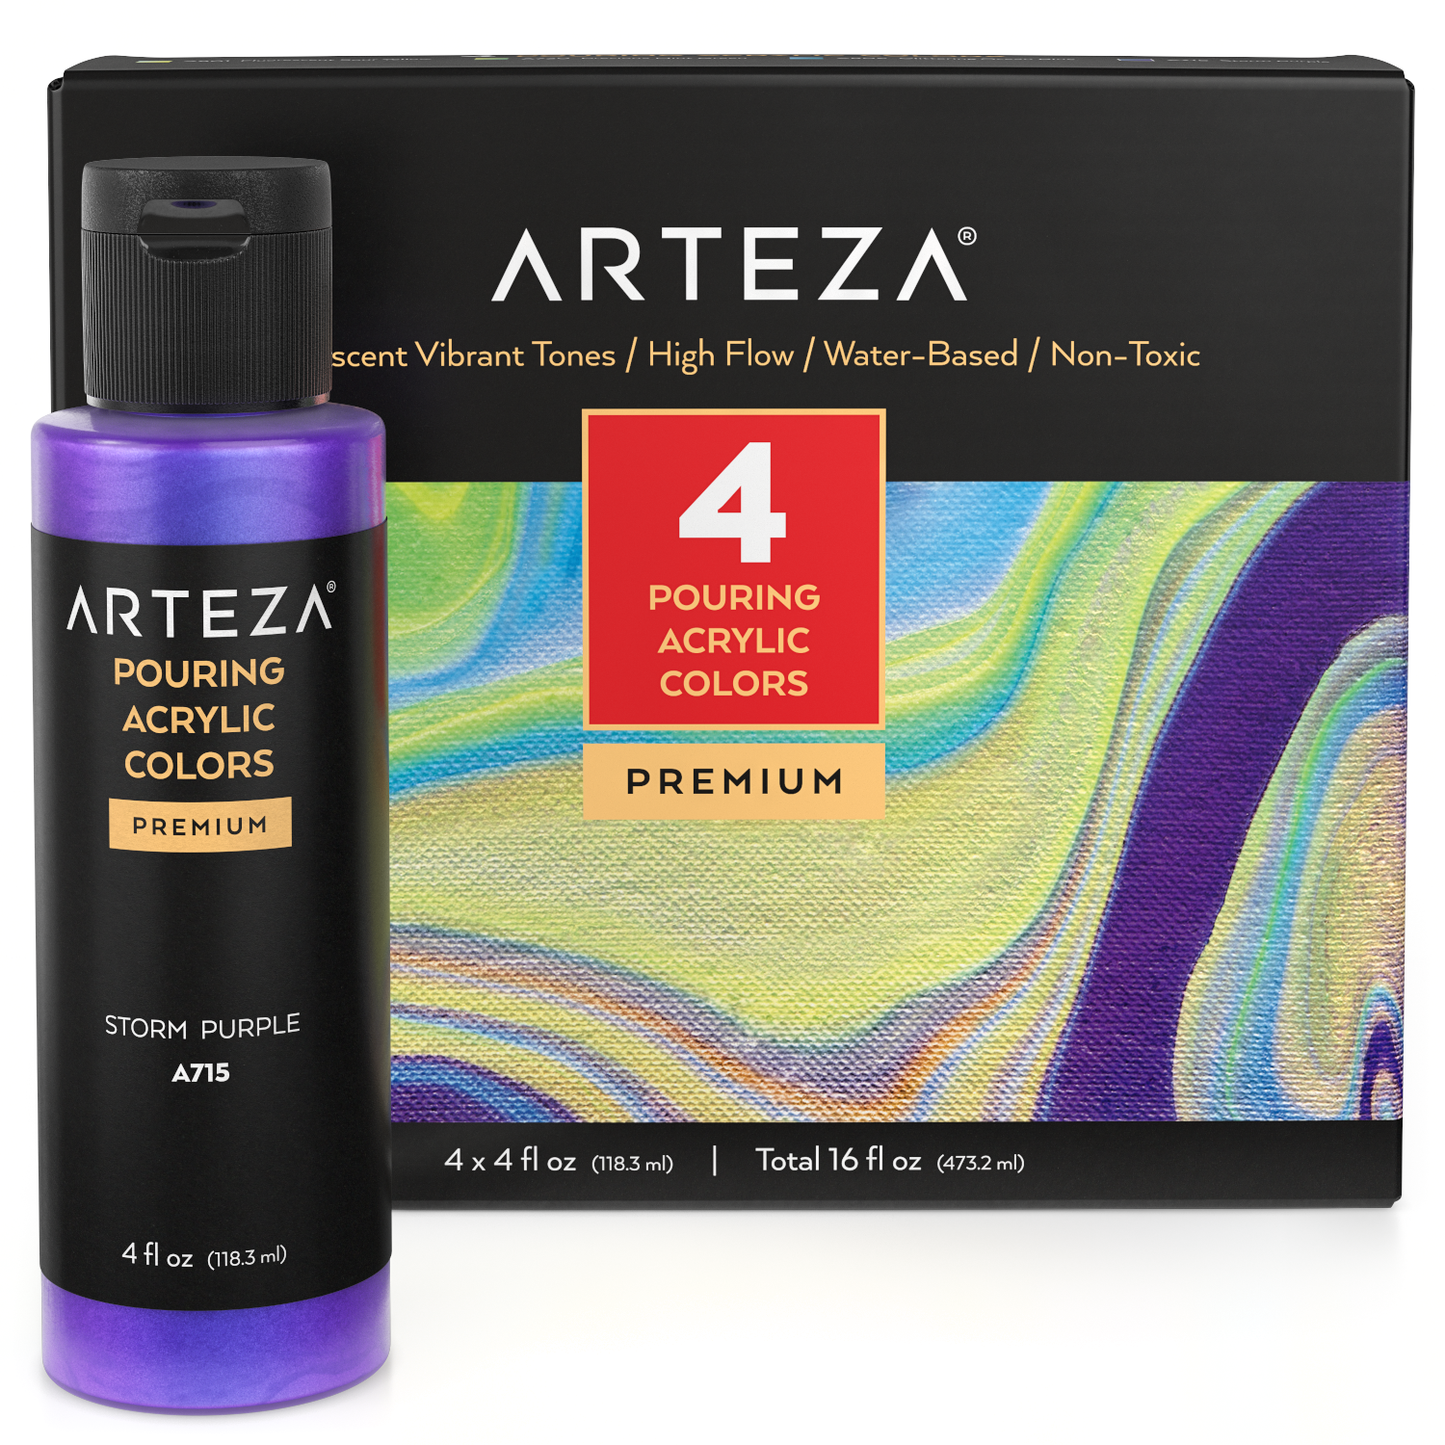 ARTZ-4098 Arteza Iridescent Acrylic Paint, Set Of 4, Candy Tones, 4 Fl Oz  Bottles, High-Flow Pouring Paint, Art Supplies For Canvas, Glass